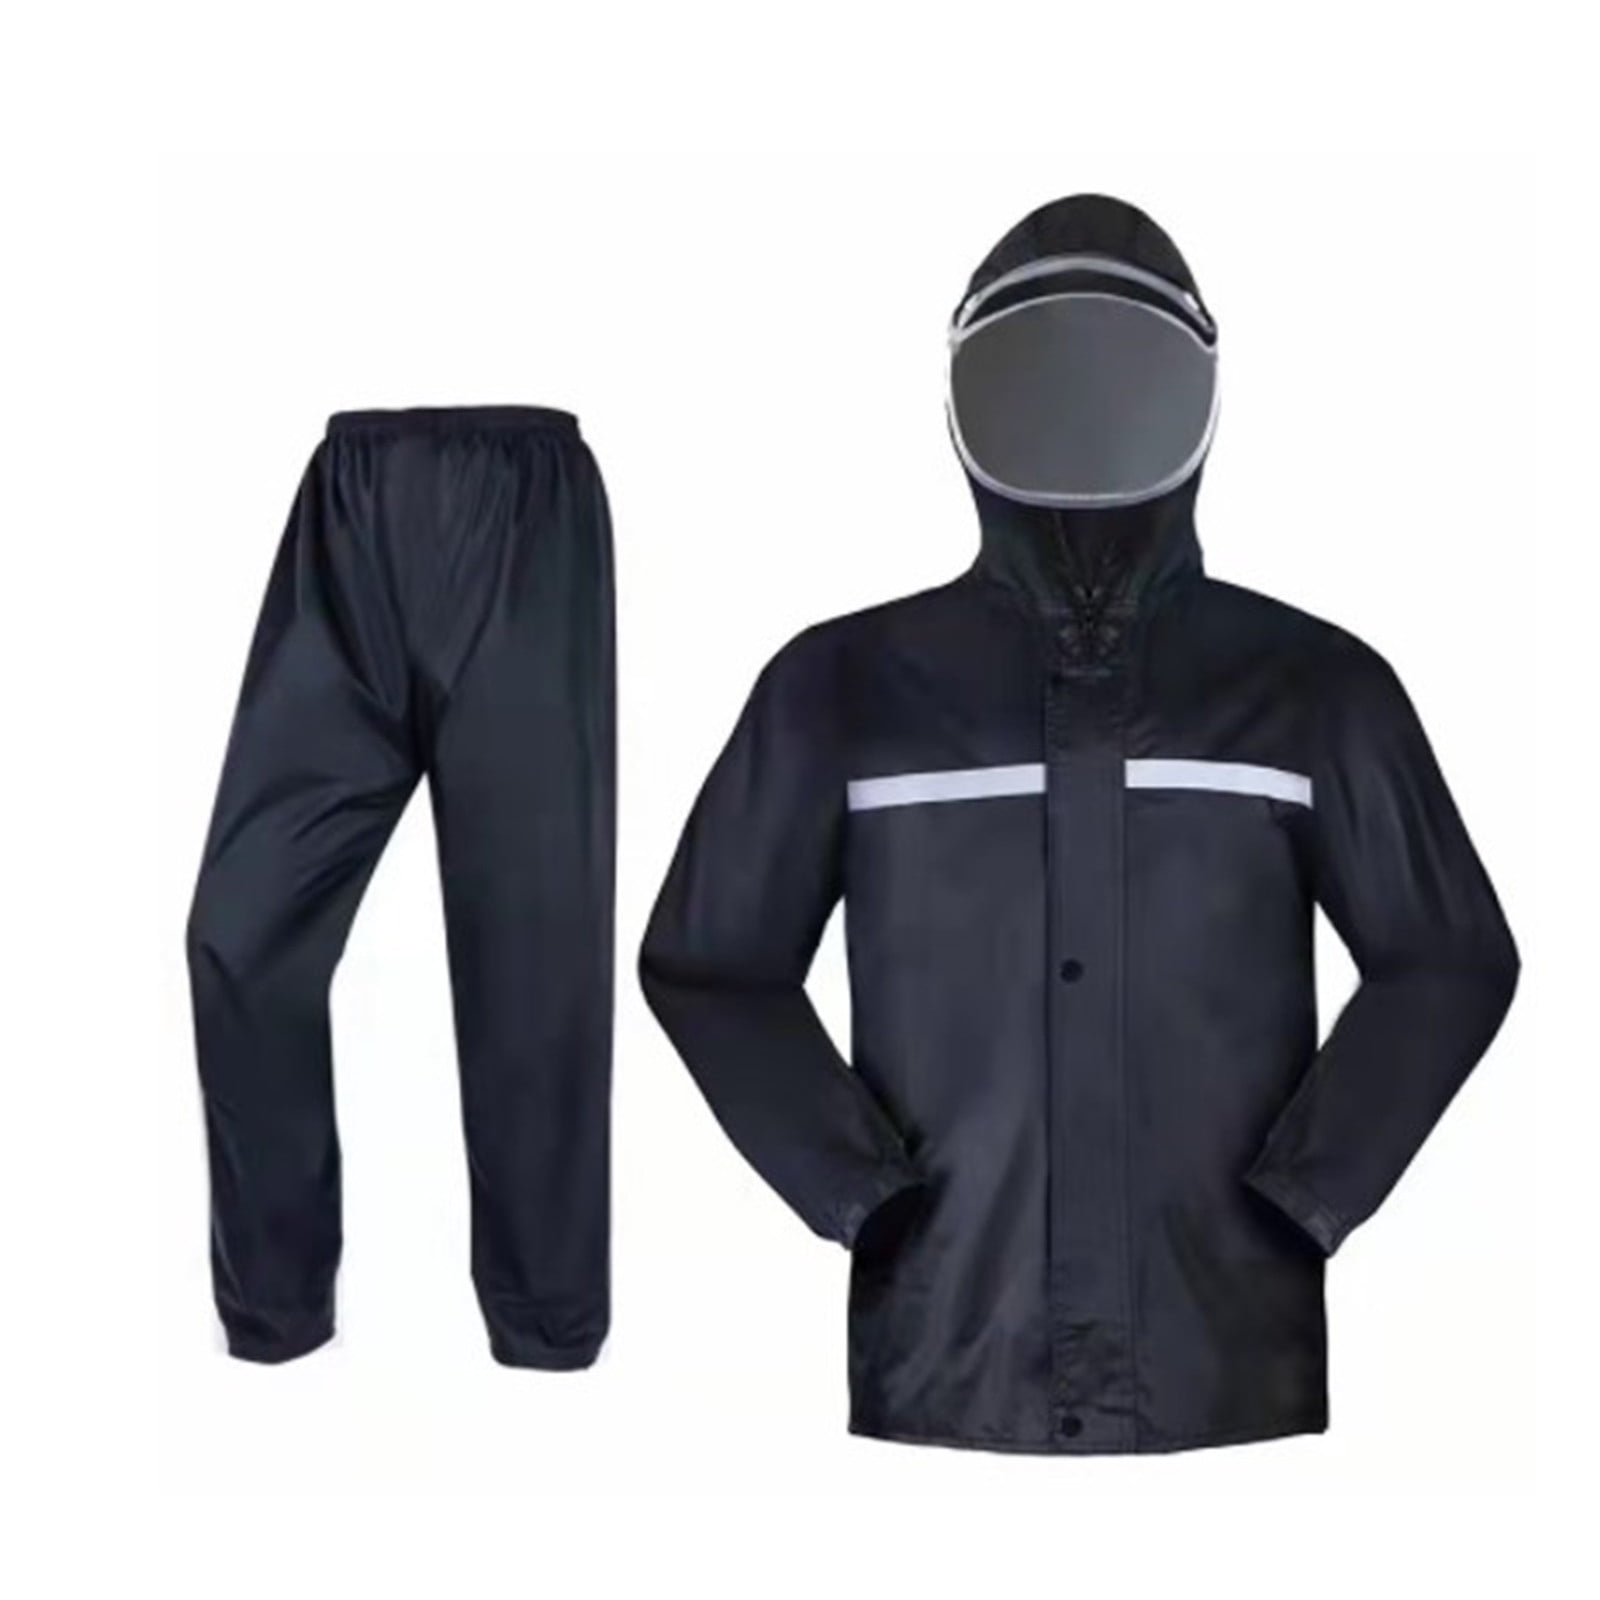 Fabiurt Suits Rain Suit Jacket Trouser Suit Raincoat For Men Outdoor ...